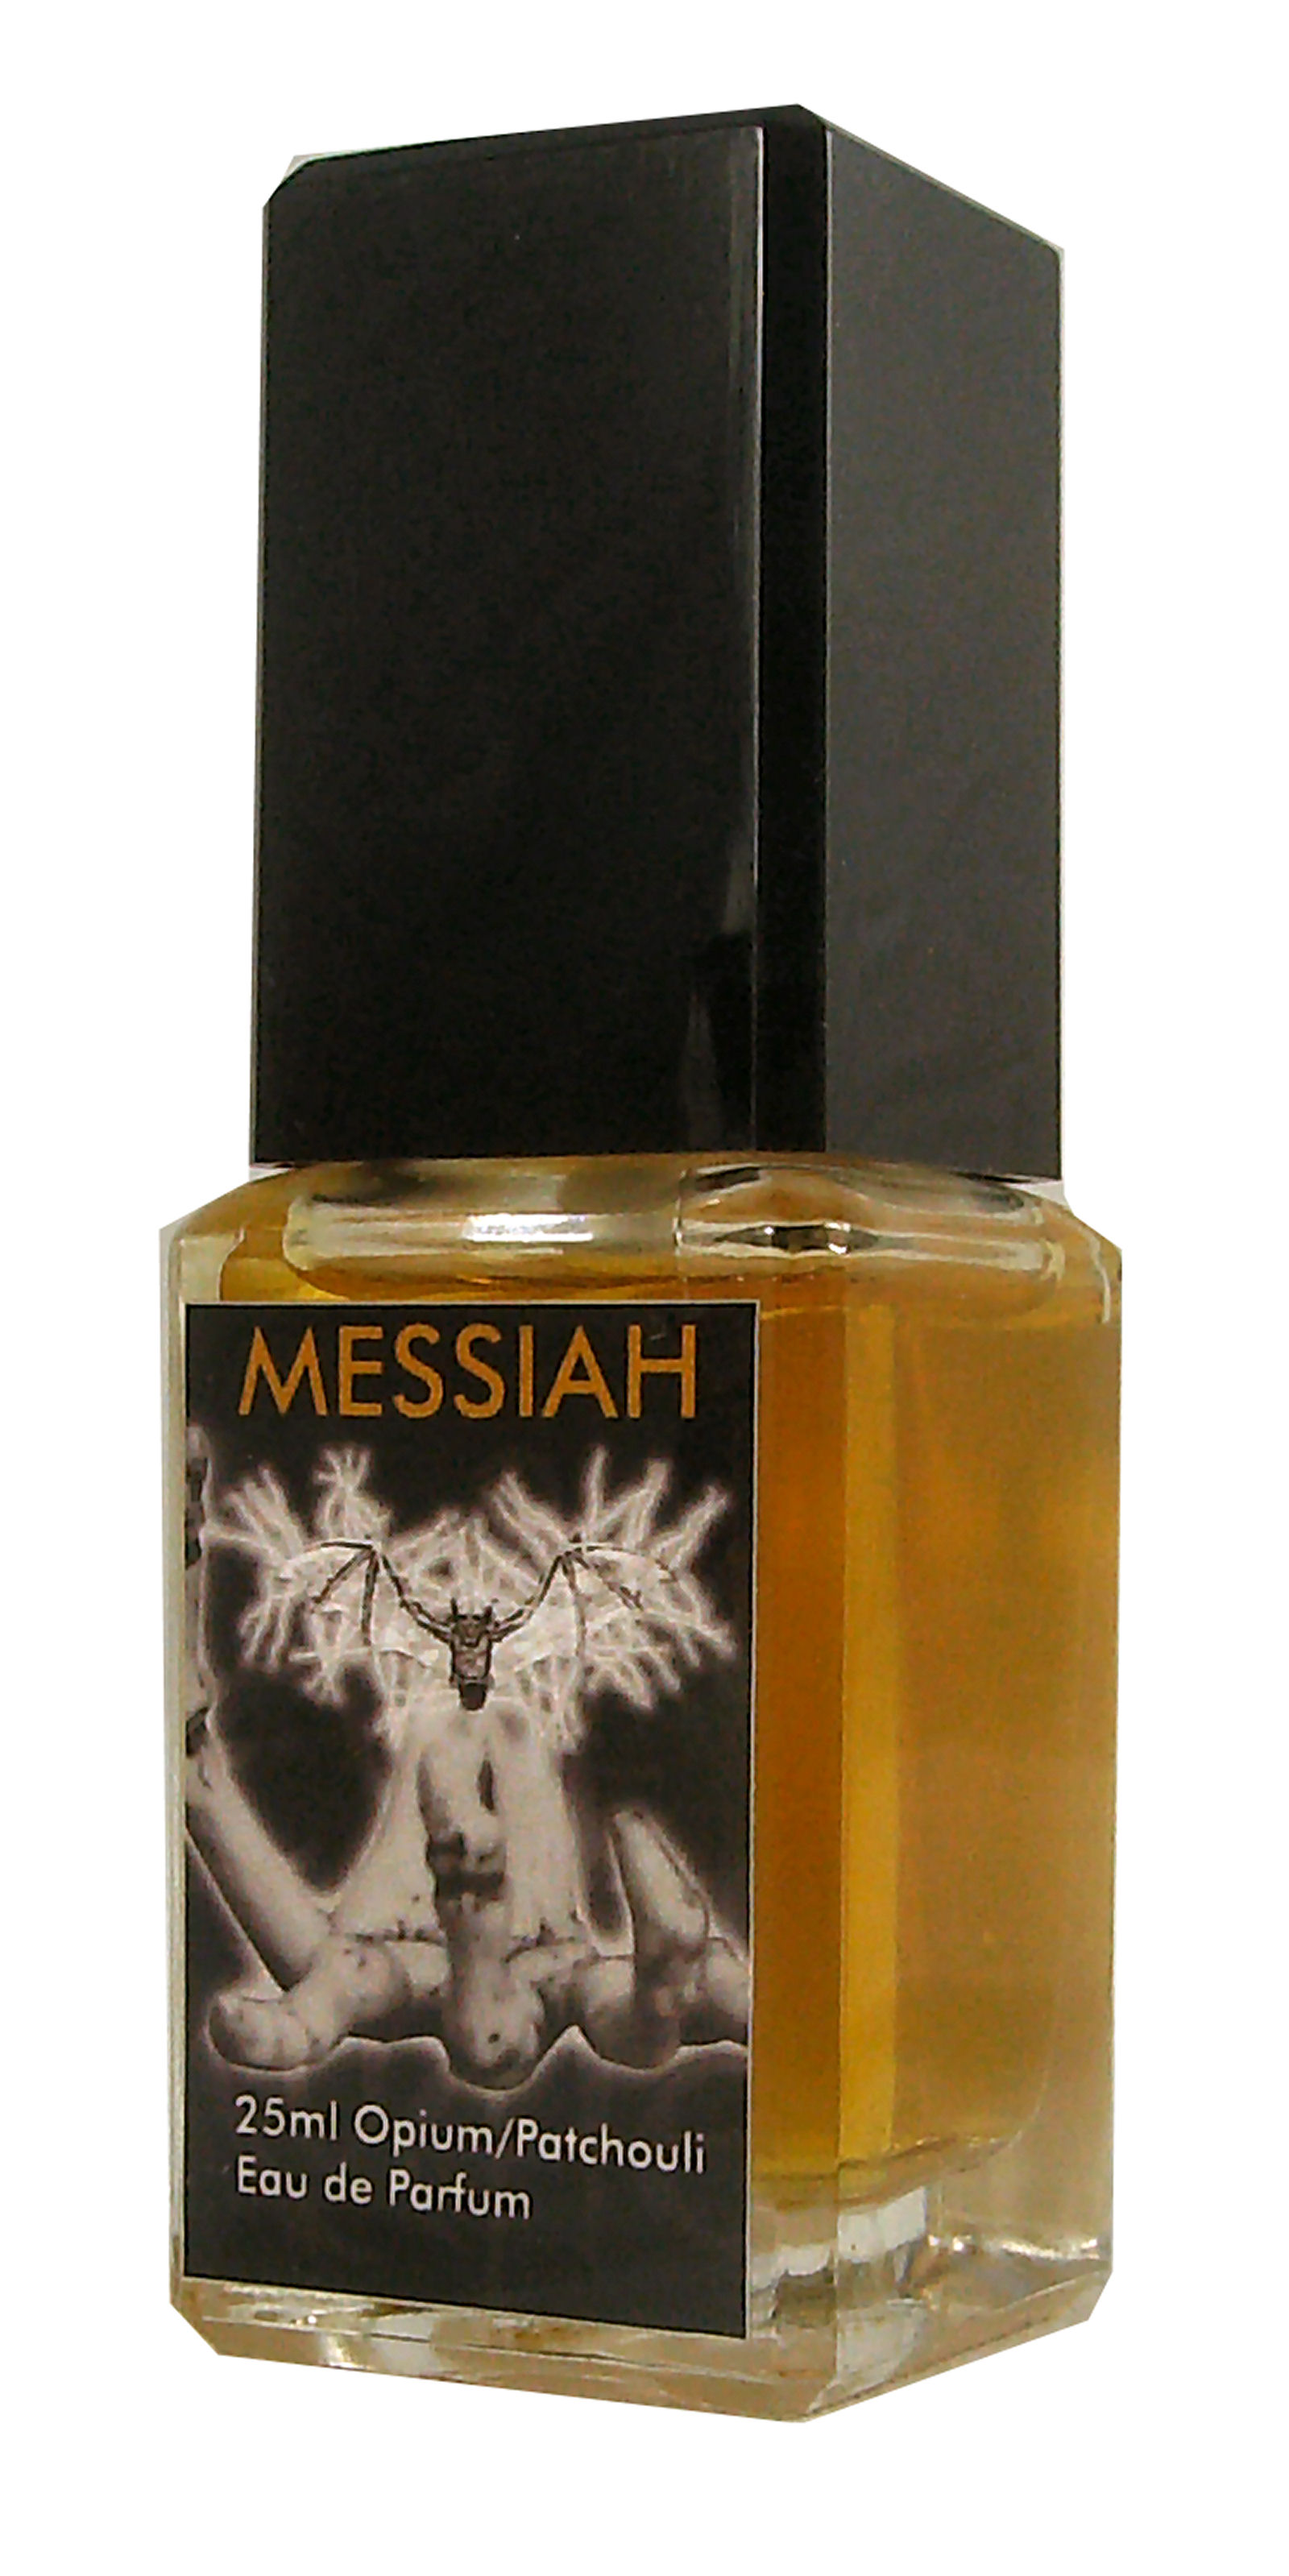 Patchouli Messiah, Eau de Parfum 25ml